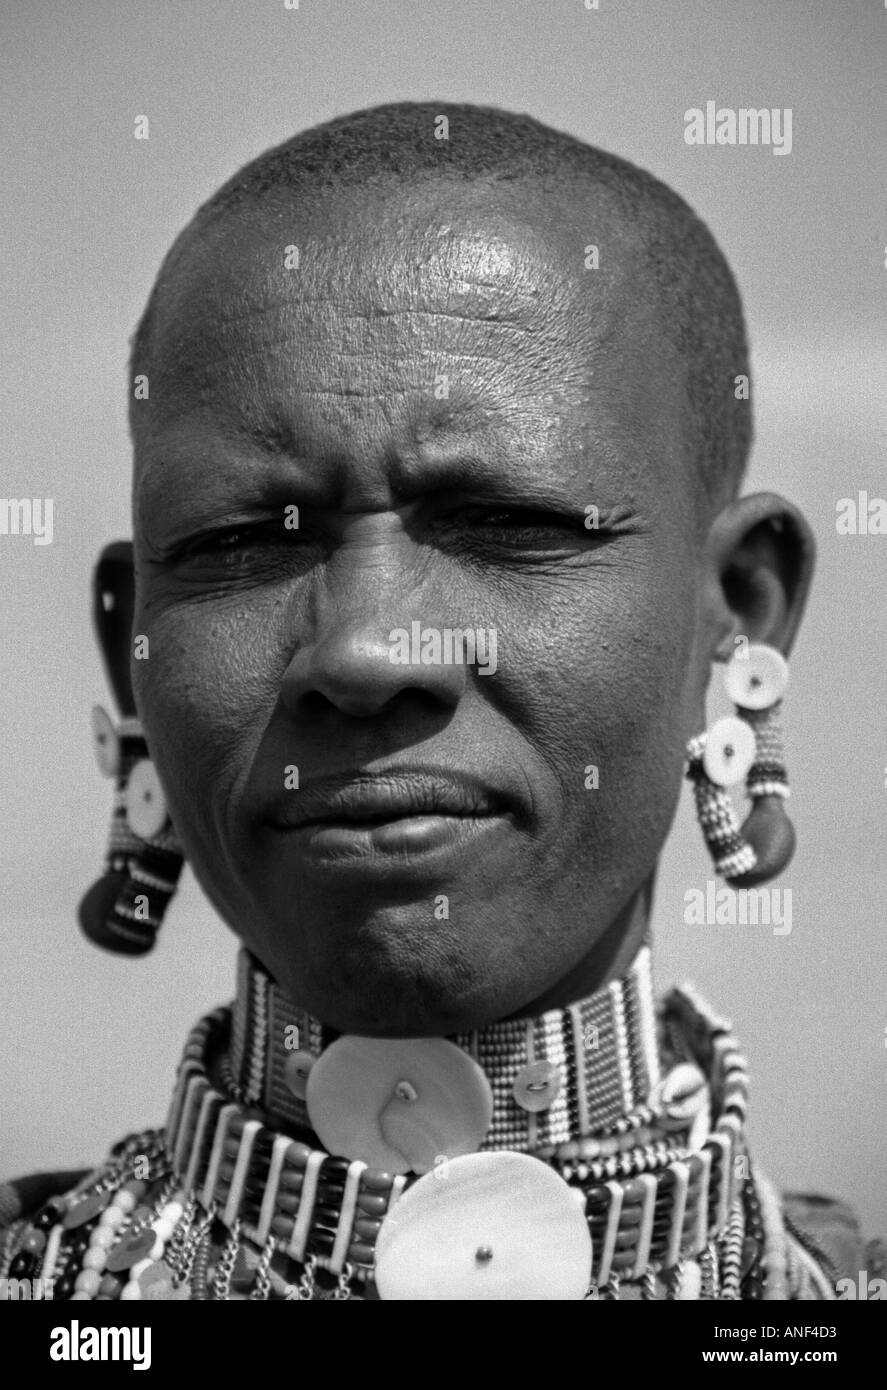 L'homme décoré de perles colorées travail peuple masai Masai Mara National Reserve d'Ewaso Ngiro sud du Kenya Afrique de l'Est Banque D'Images